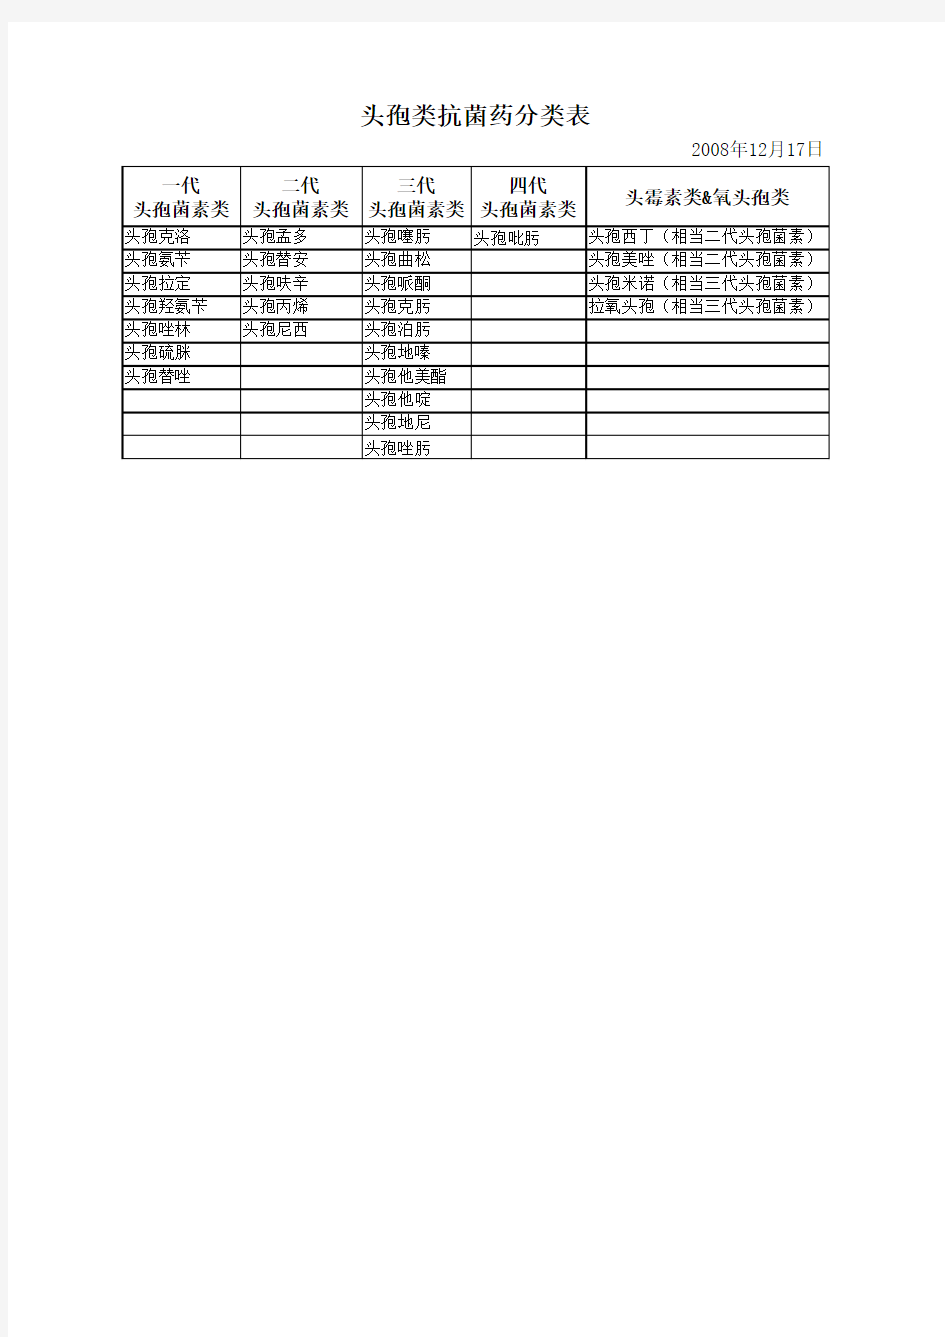 头孢类药物分类表(081217)